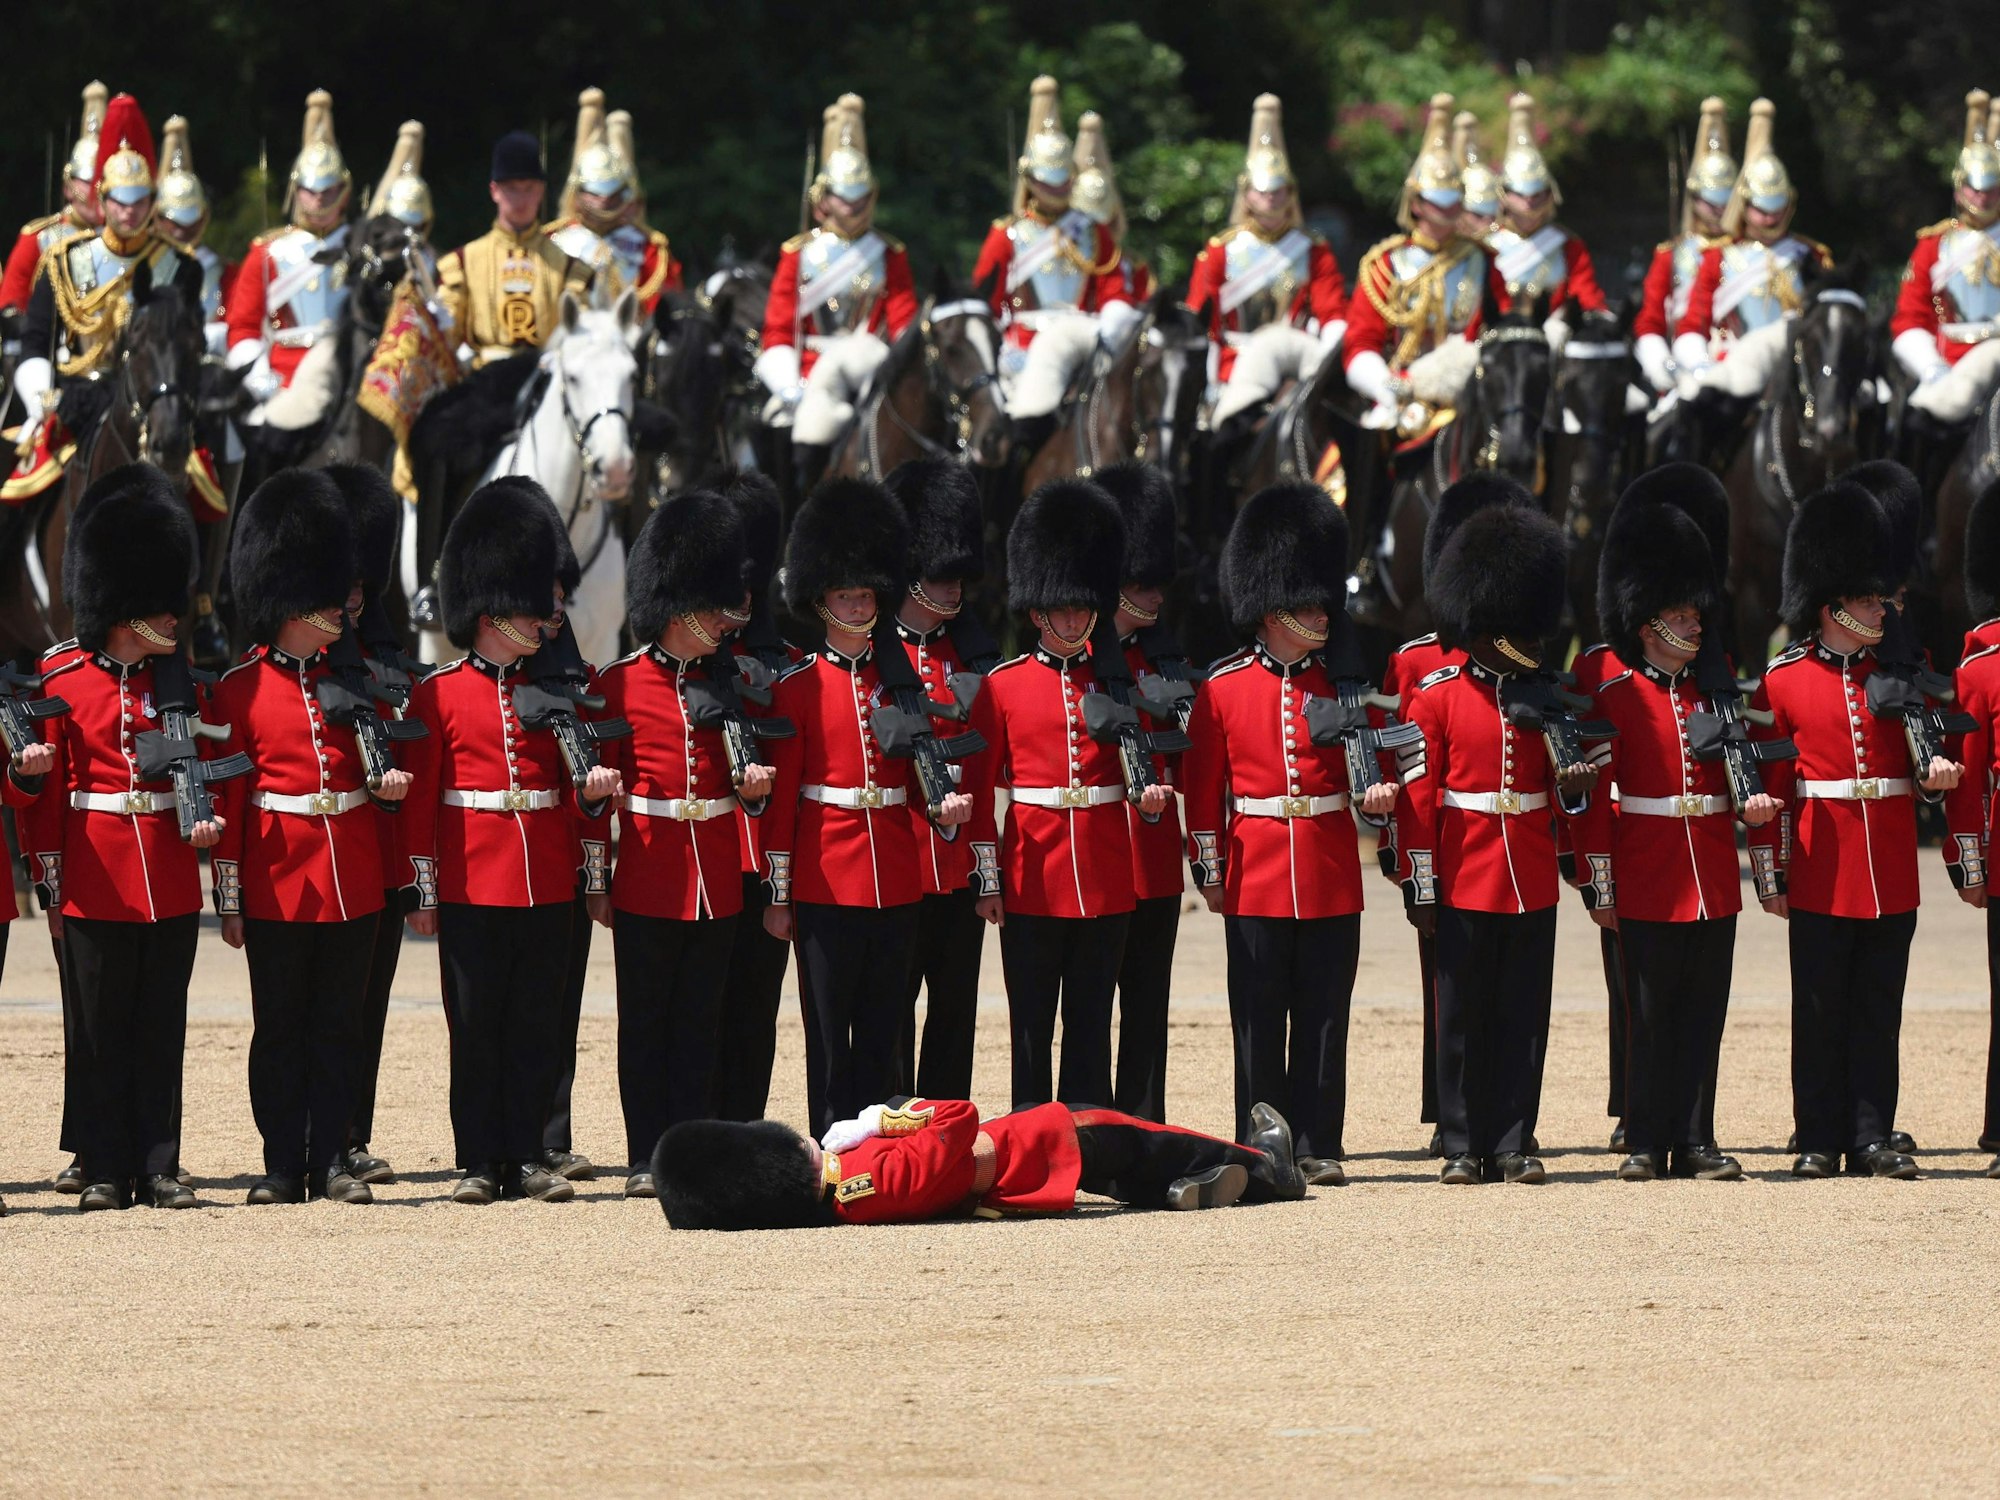 Ein Mitglied der Grenadier Guards fällt während der Colonel's Review auf der Horse Guards Parade in London in Ohnmacht.